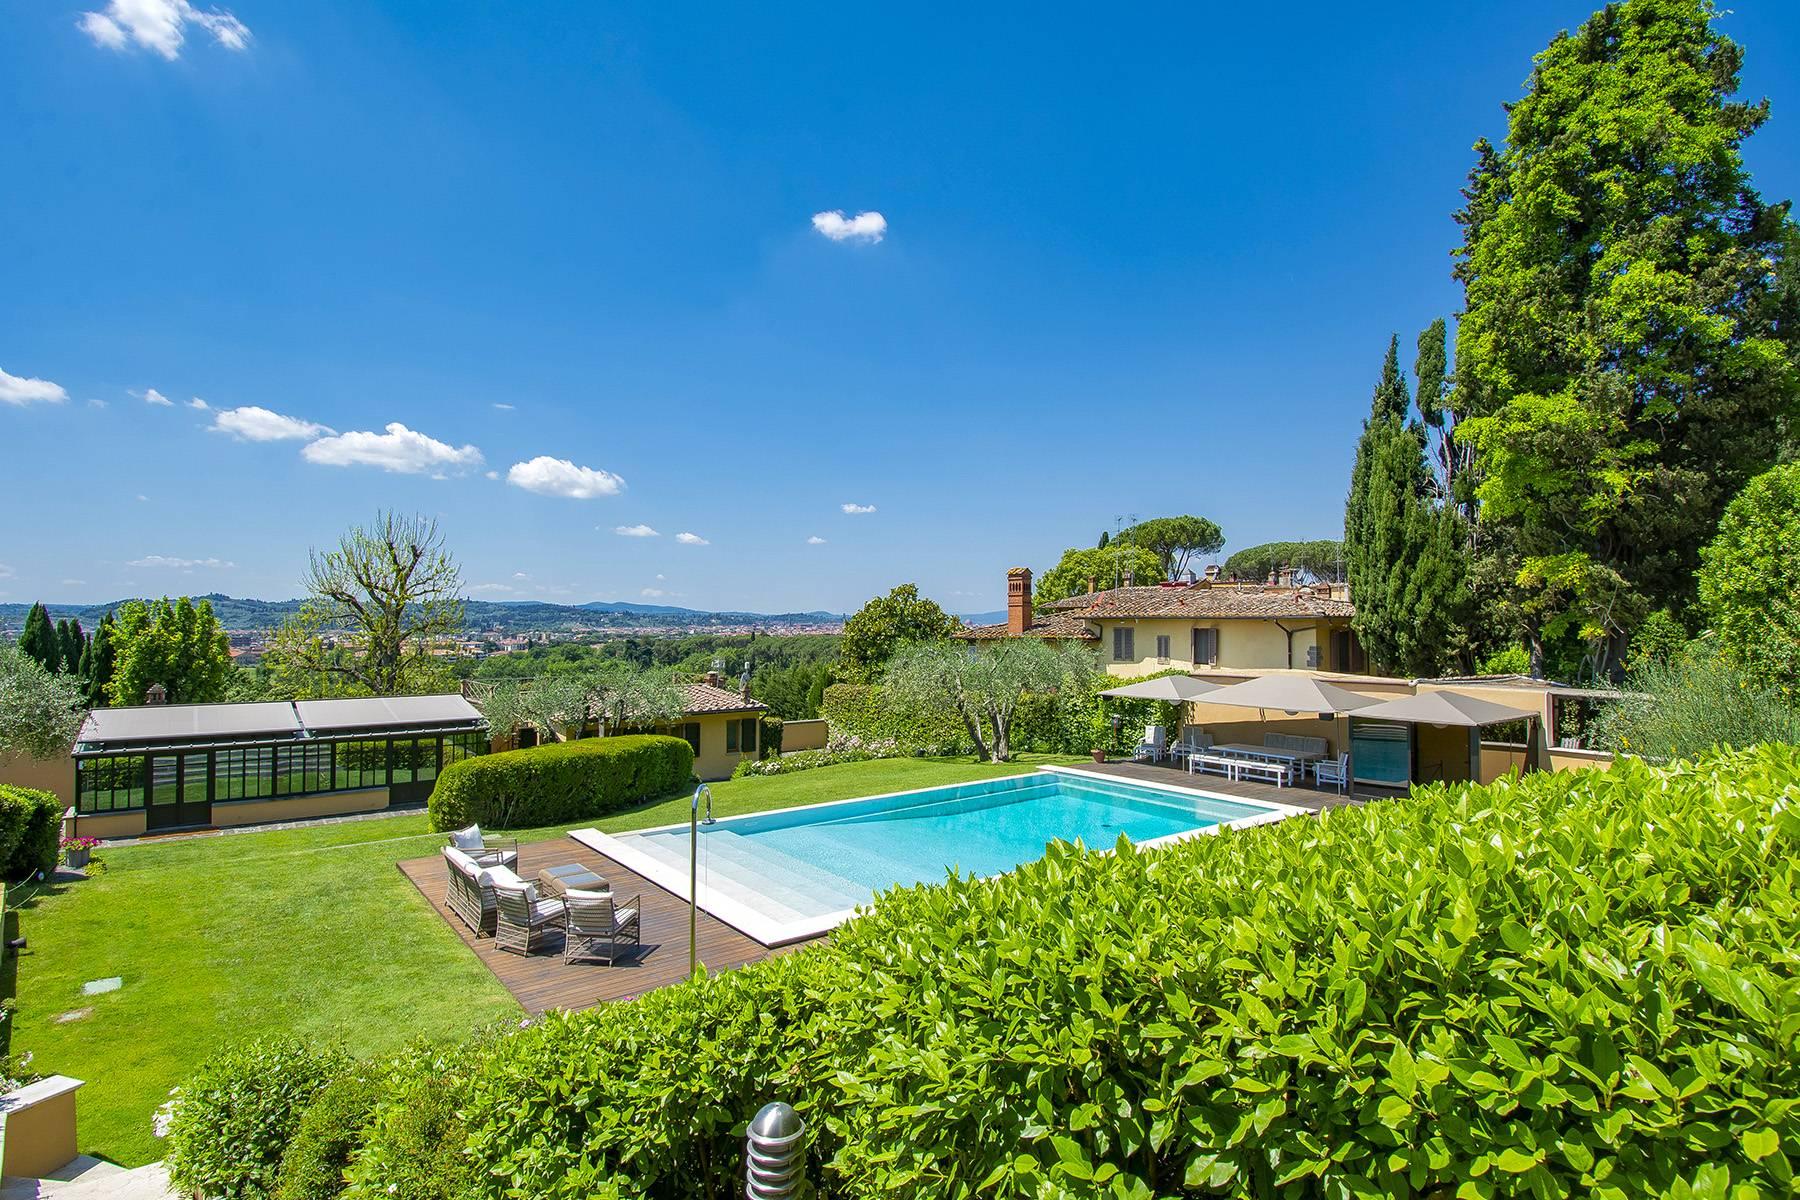 Straordinaria villa sulle colline intorno a Firenze con piscina e palestra - 1